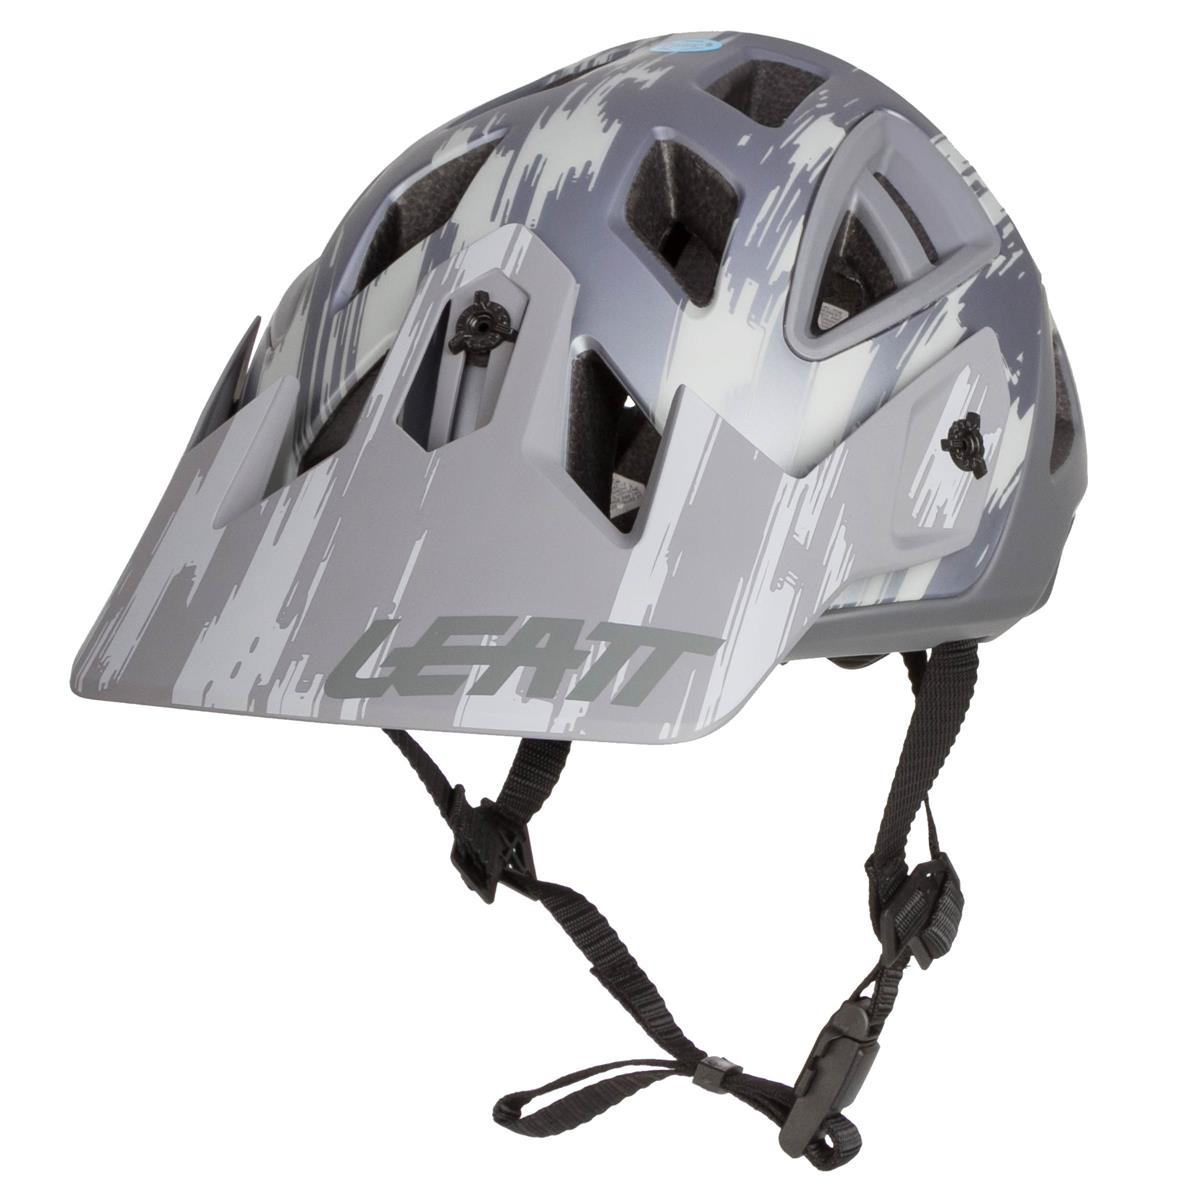 Leatt Enduro MTB Helmet DBX 3.0 All Mountain Brushed